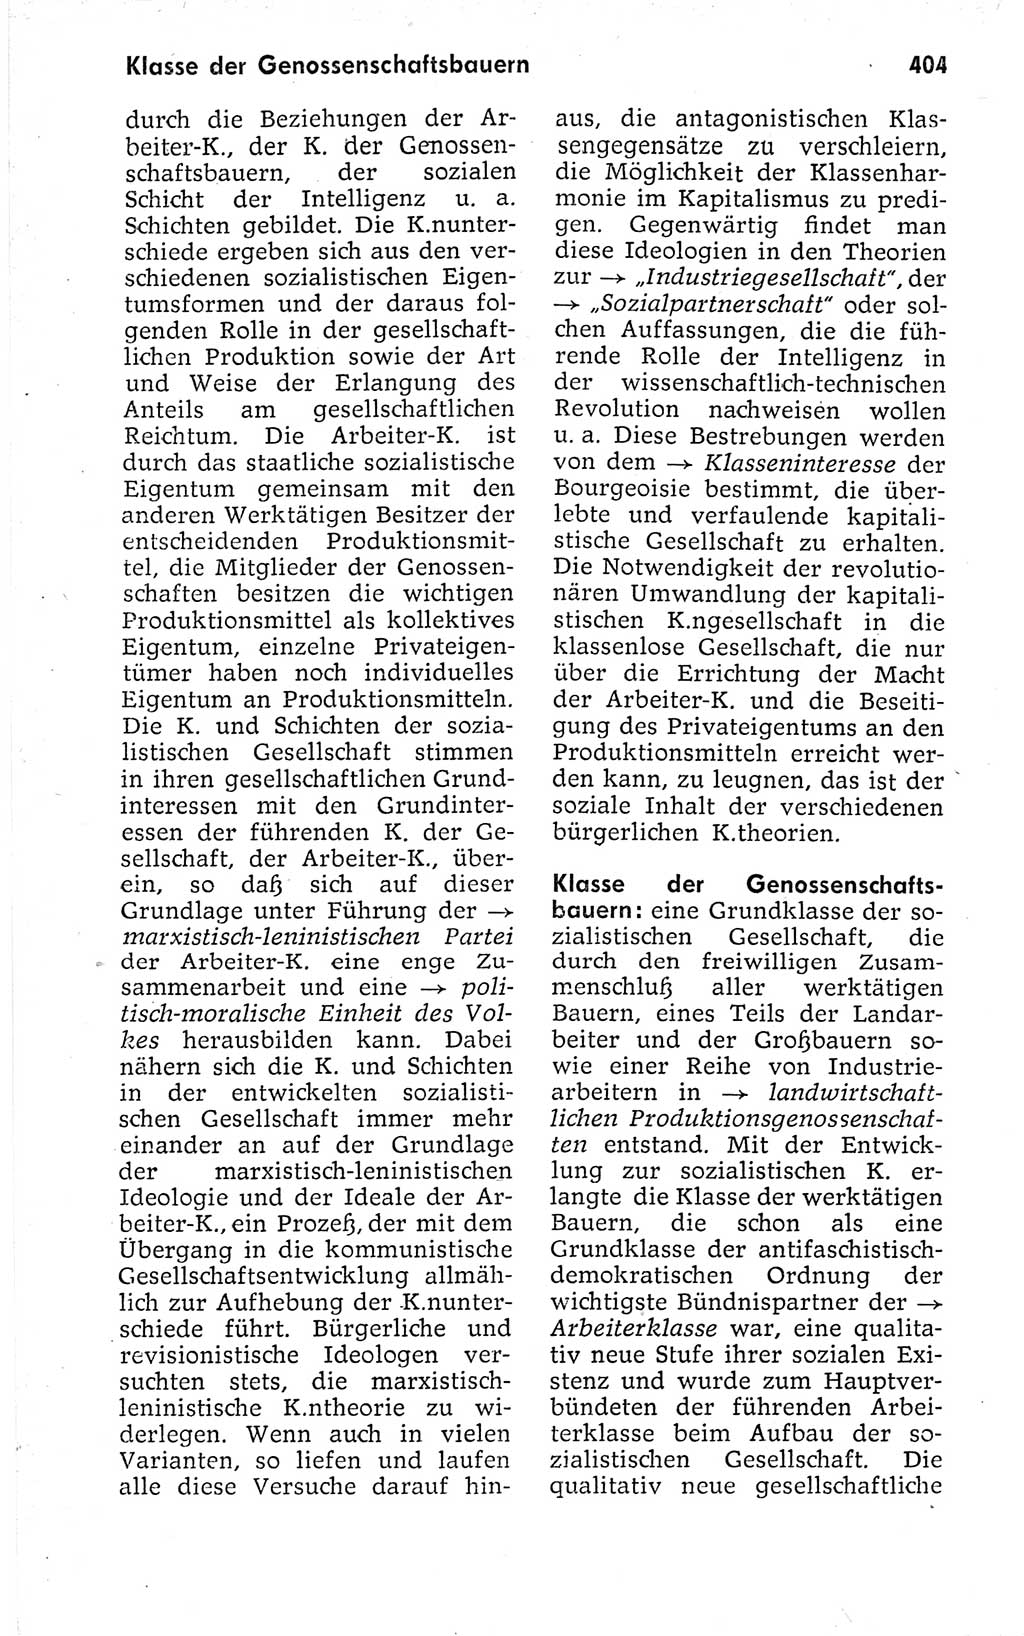 Kleines politisches Wörterbuch [Deutsche Demokratische Republik (DDR)] 1973, Seite 404 (Kl. pol. Wb. DDR 1973, S. 404)